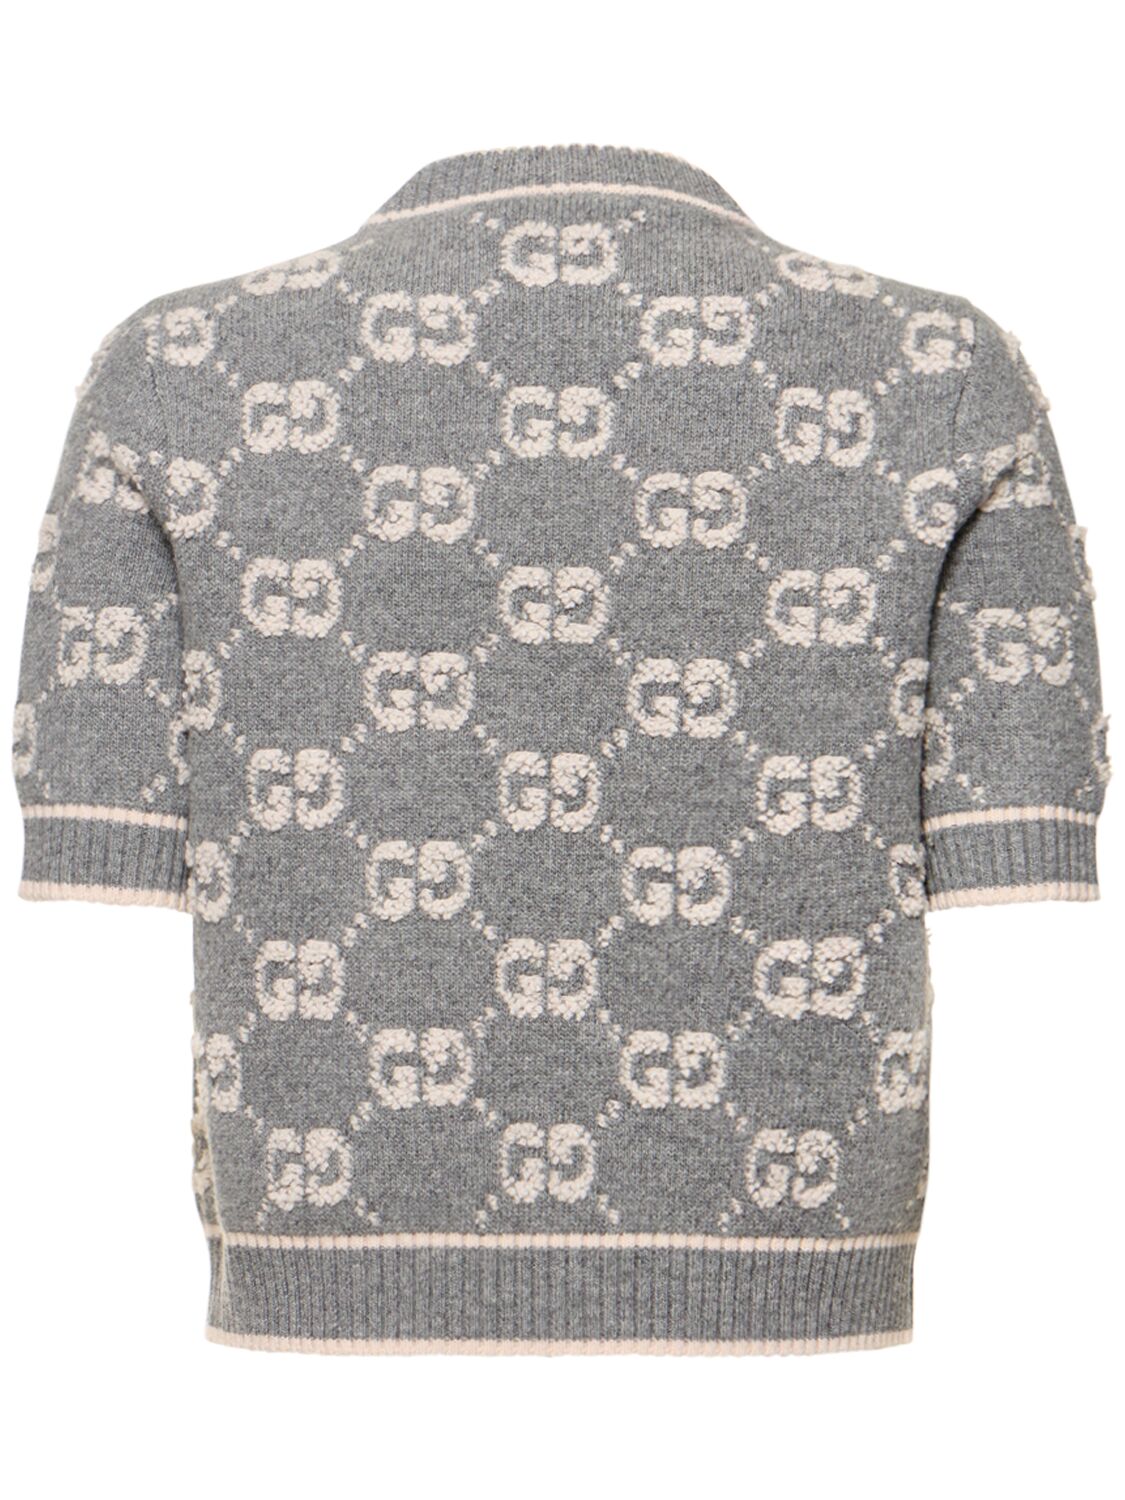 GG wool jacquard cardigan in grey